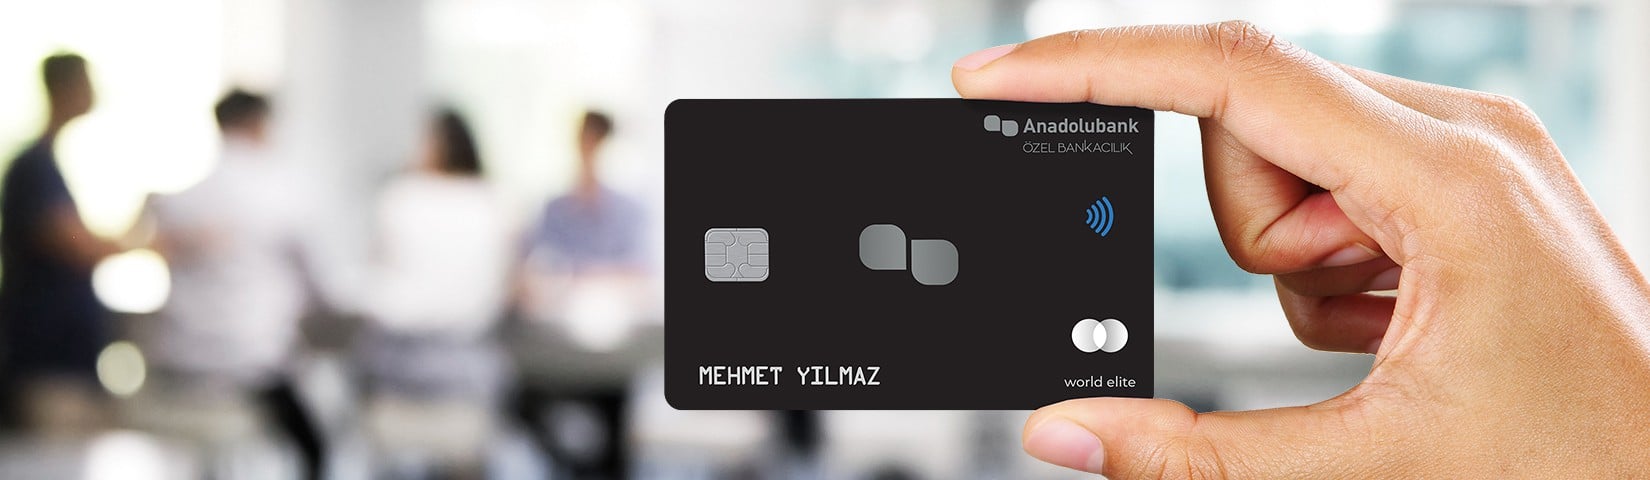 Anadolubank Özel Bankacılık Kredi Kartı